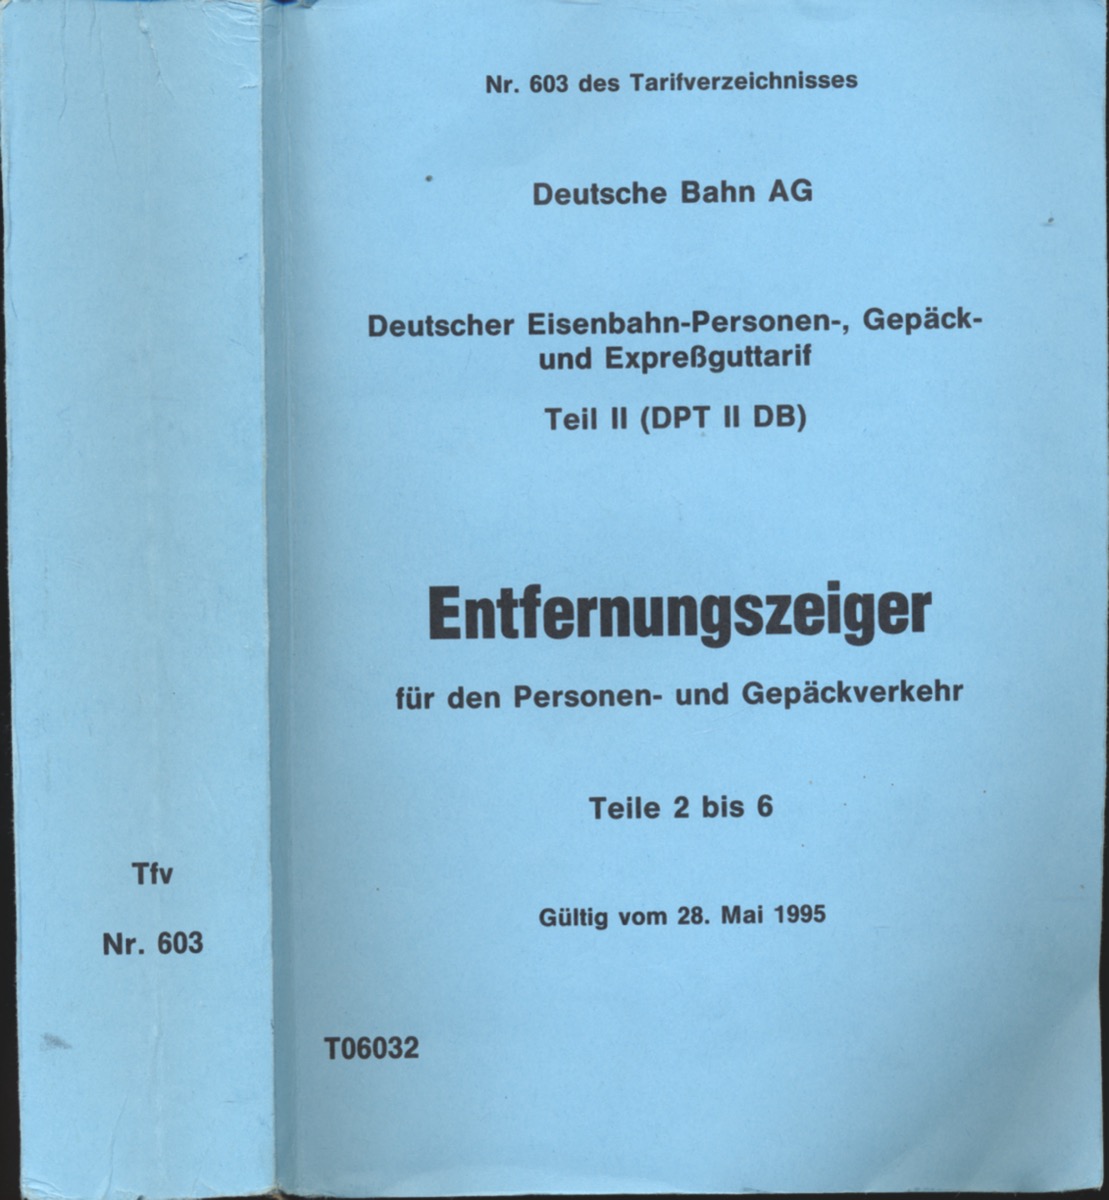   Entfernungszeiger für den Personen- und Gepäckverkehr Teile 2 - 6, gültig vom 28. Mai 1995. 